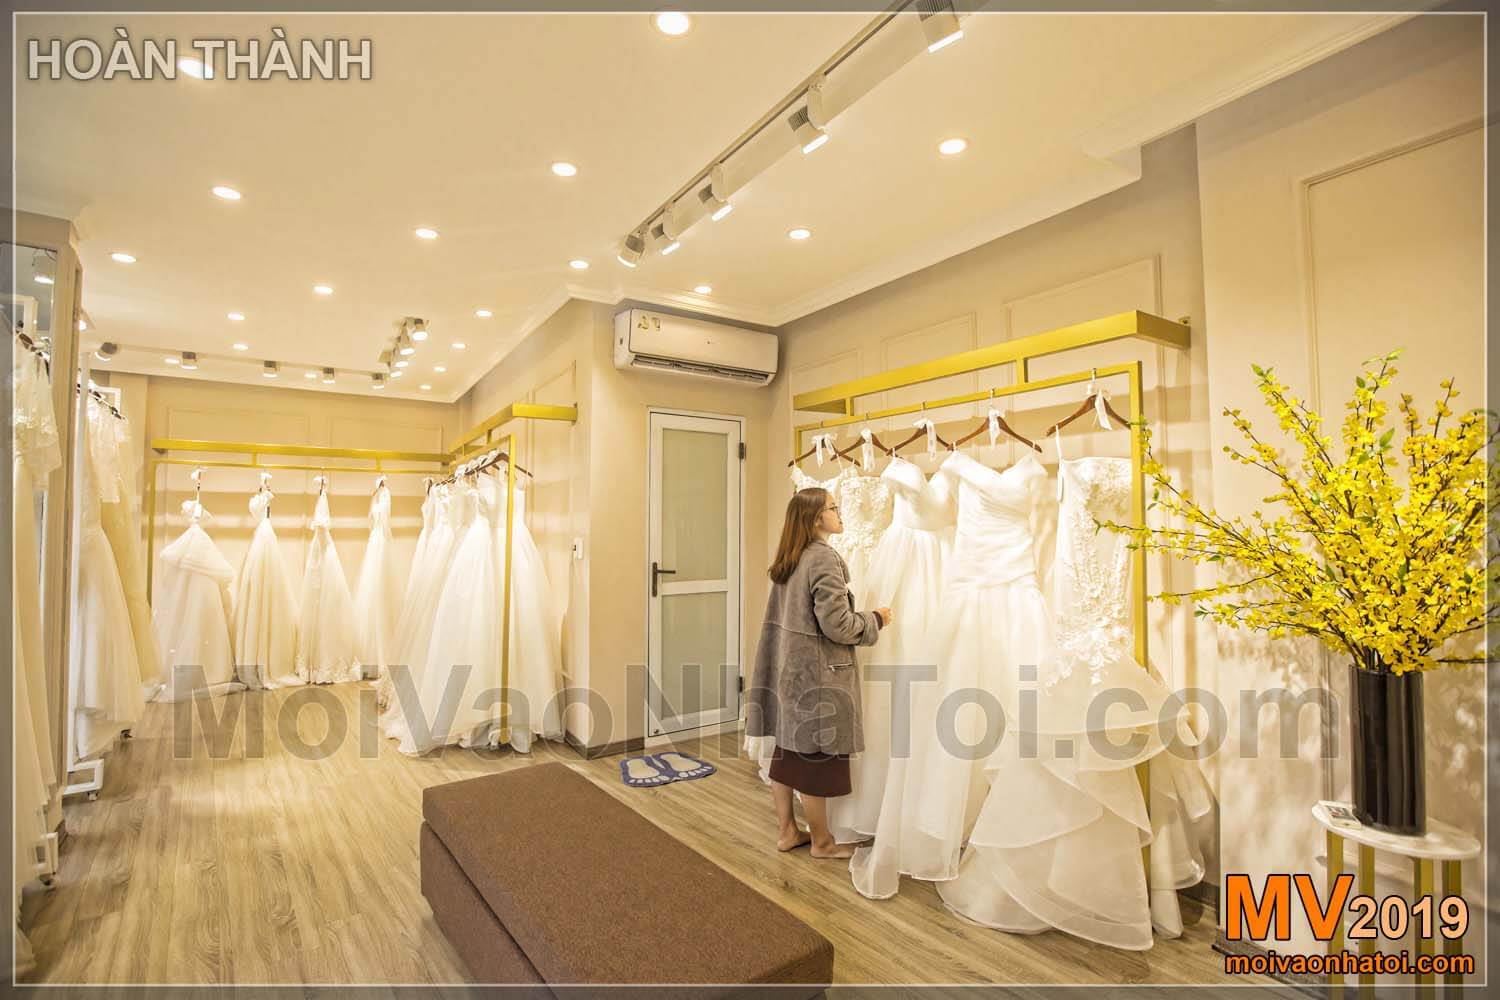 Conception de salle d'exposition de robe de mariée